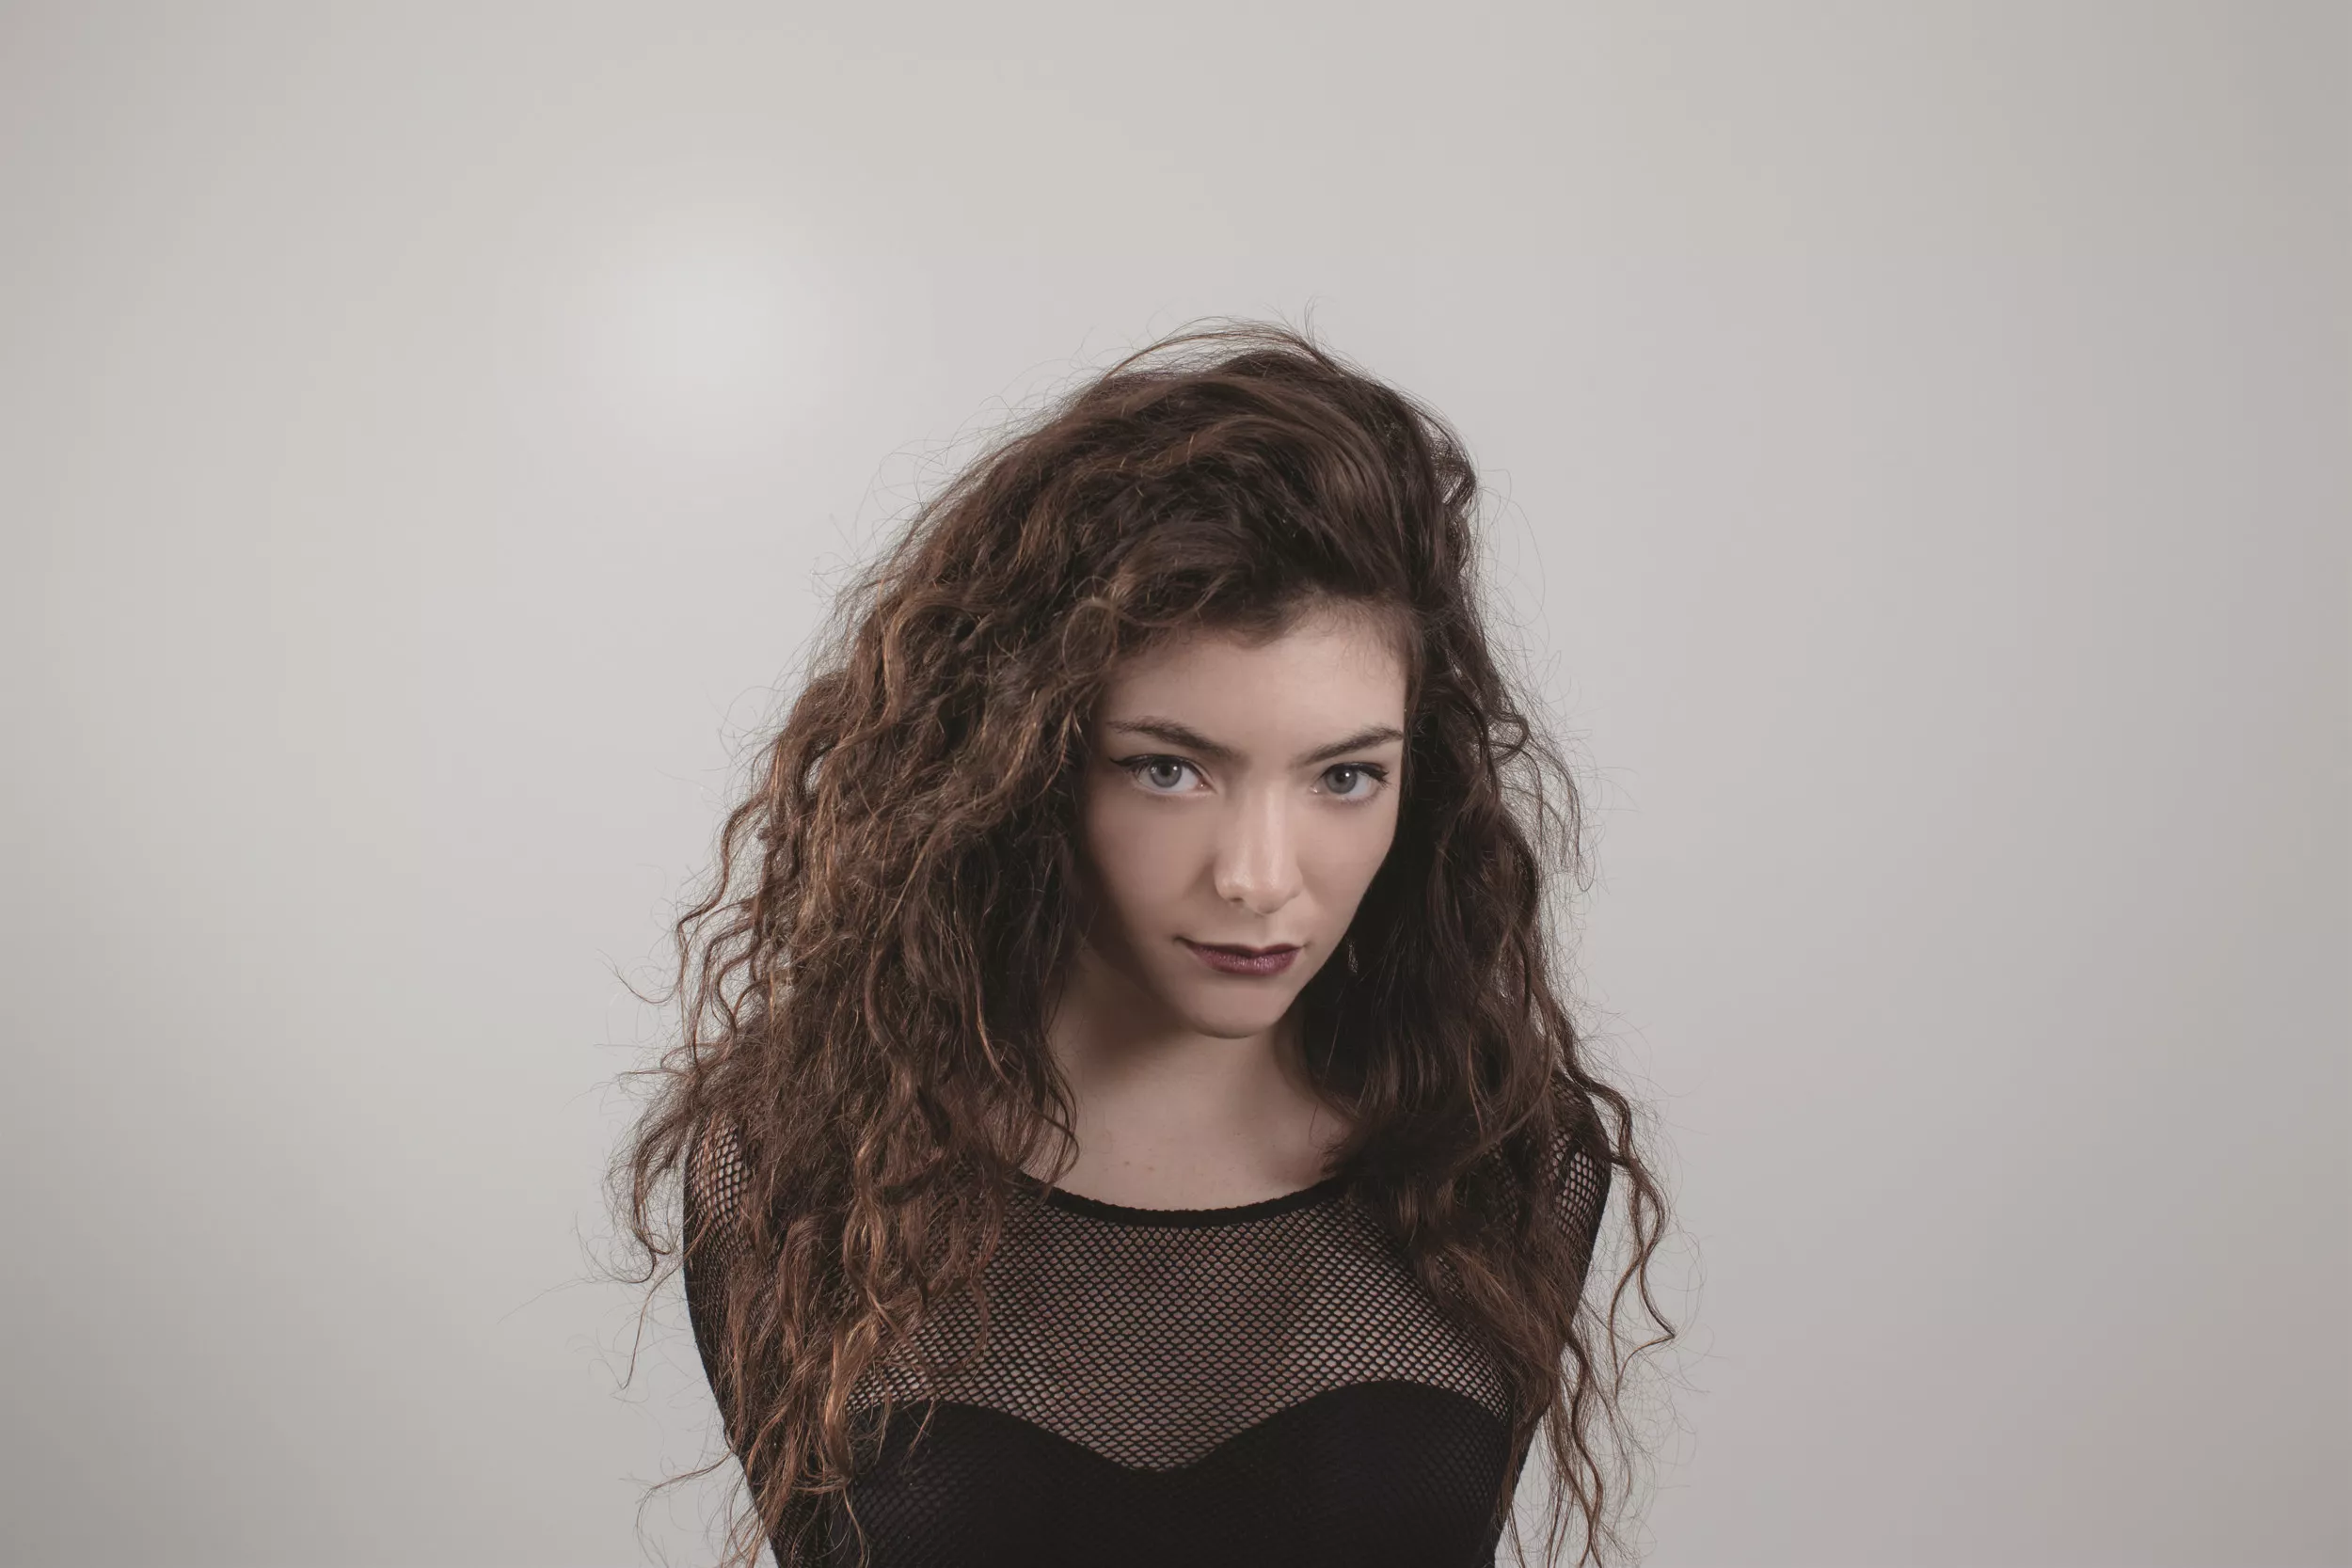 Ny sang fra Lorde – "lissom min favorit-ting nogensinde", skriver hun